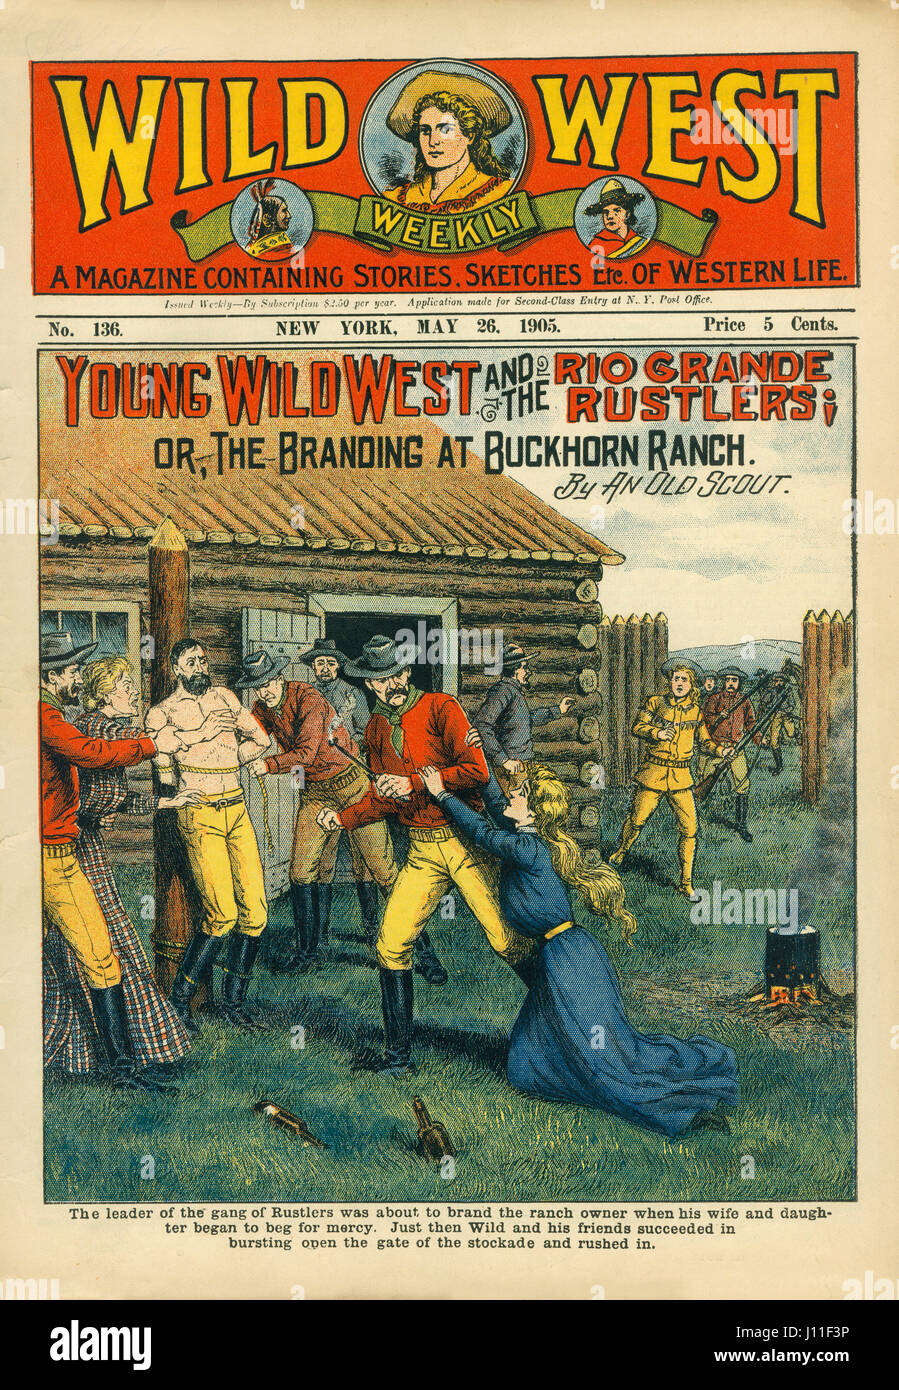 Abdeckung des wilden Westens Weekly Magazine, Nr. 136, 26. Mai 1905 Stockfoto